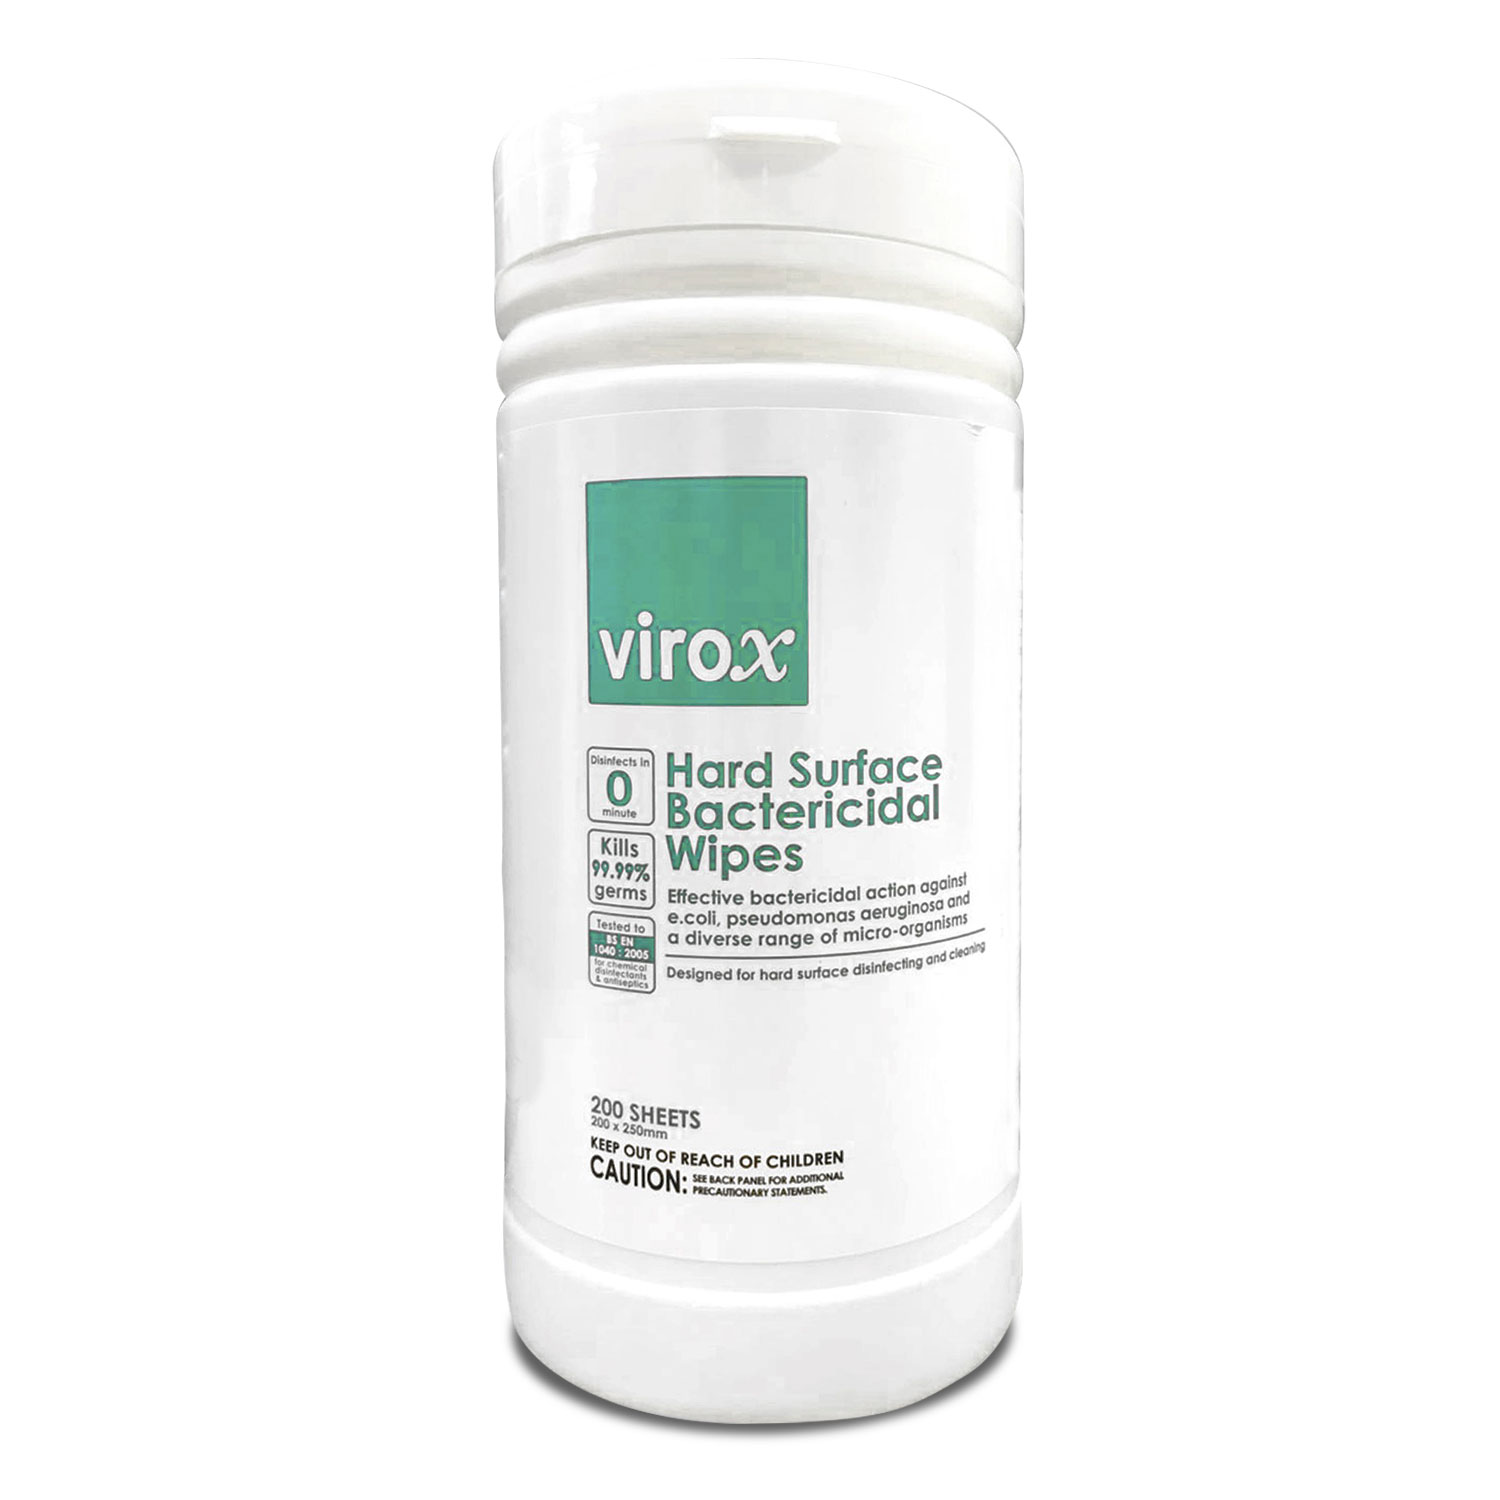 Virox – Hard Surface Bactericidal Wipes (200 sheets)